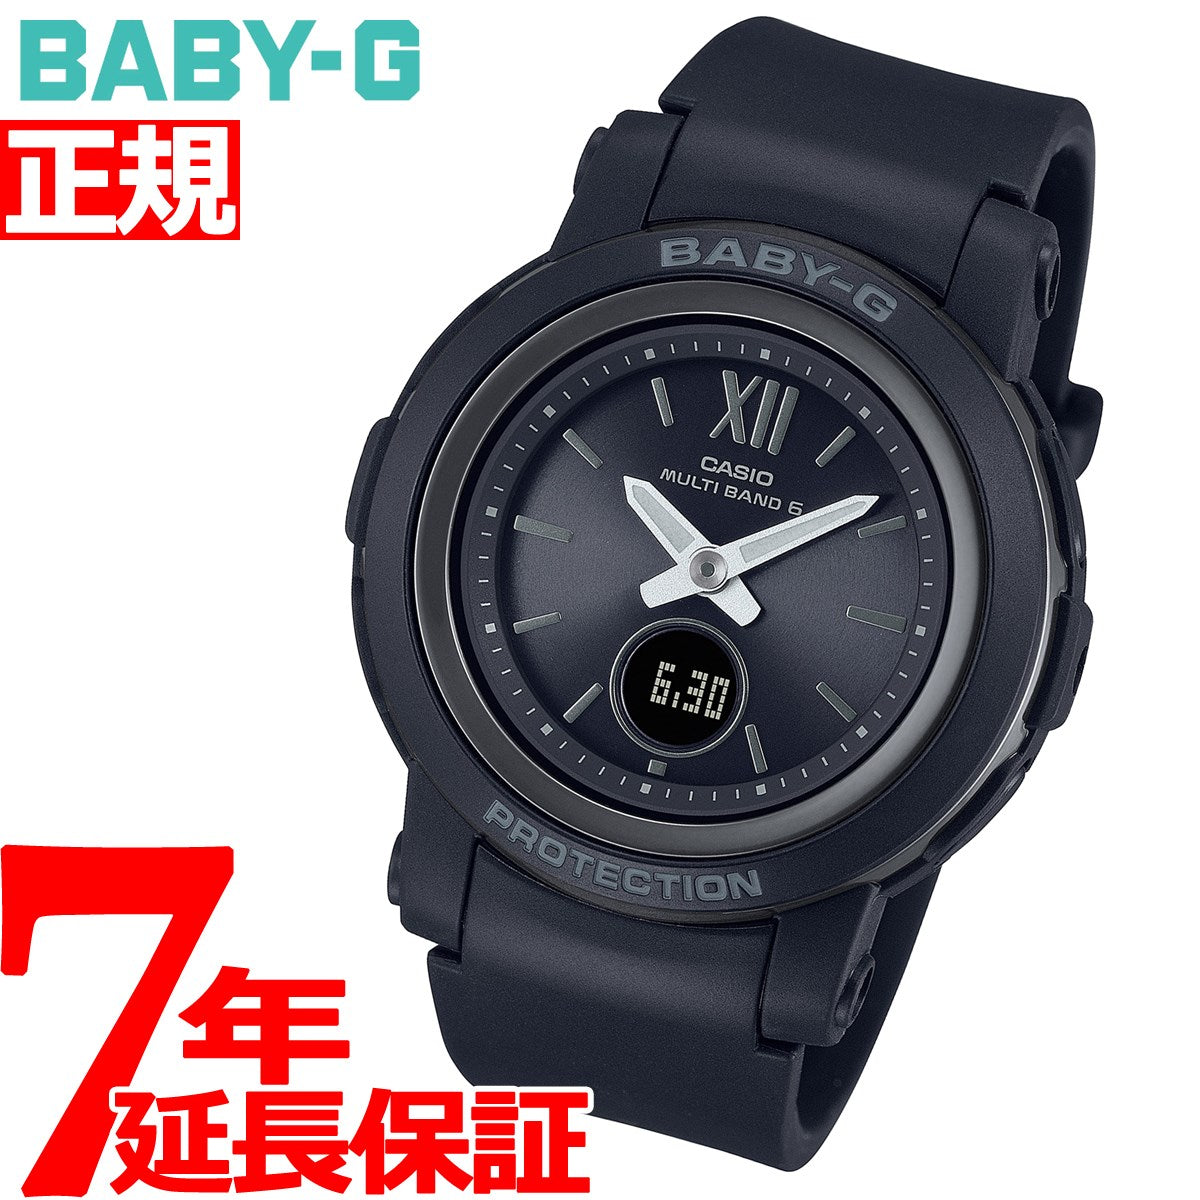 BABY-G カシオ ベビーG レディース 電波 ソーラー 腕時計 タフソーラー